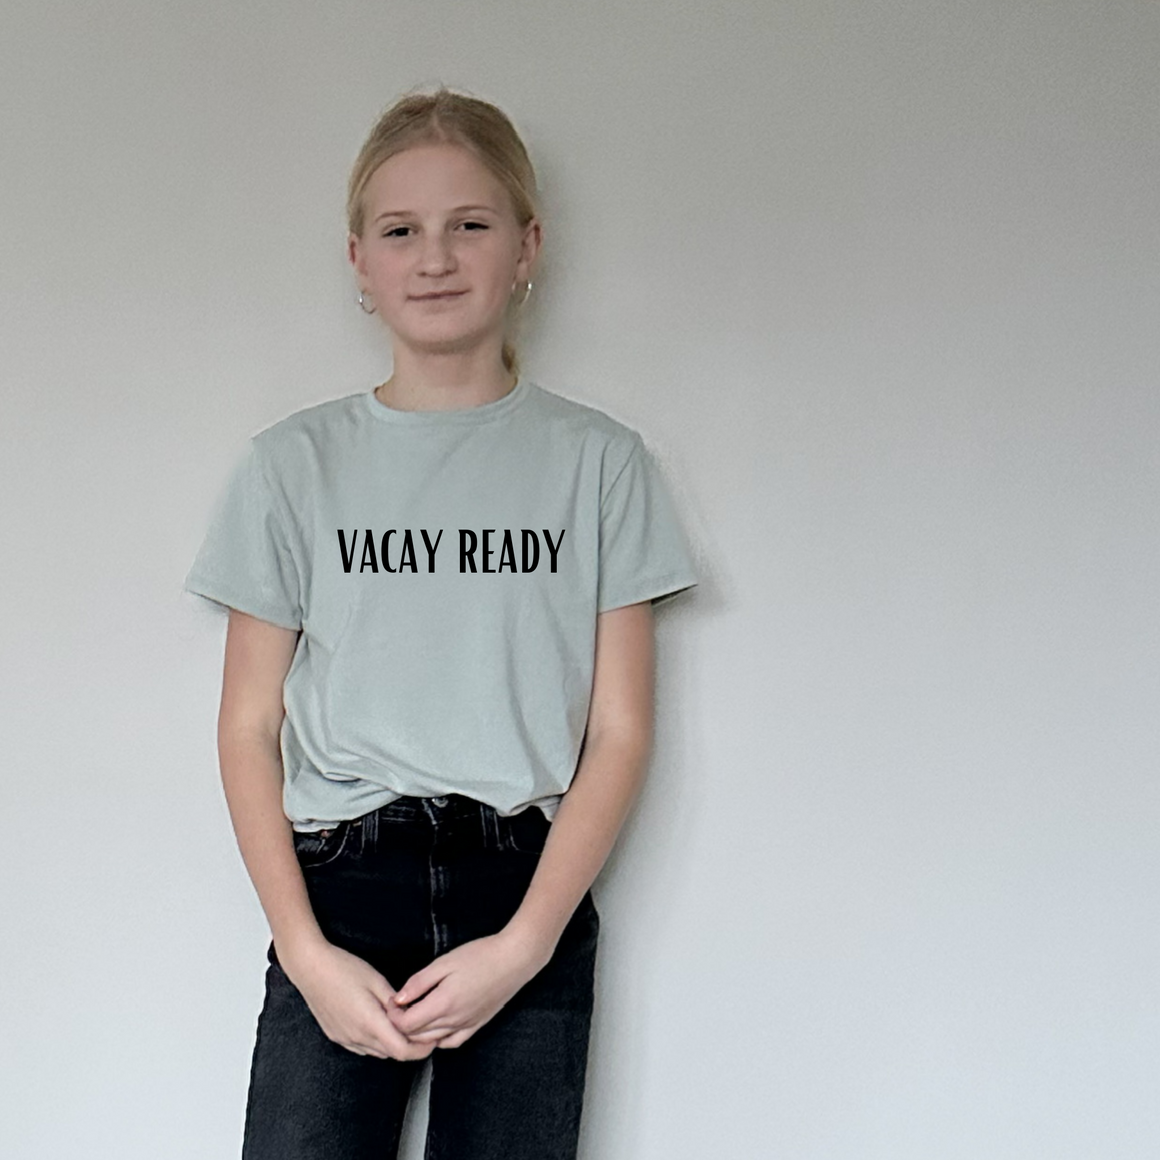 Vacay Ready Tee Shirt Youth - Posh & Cozy